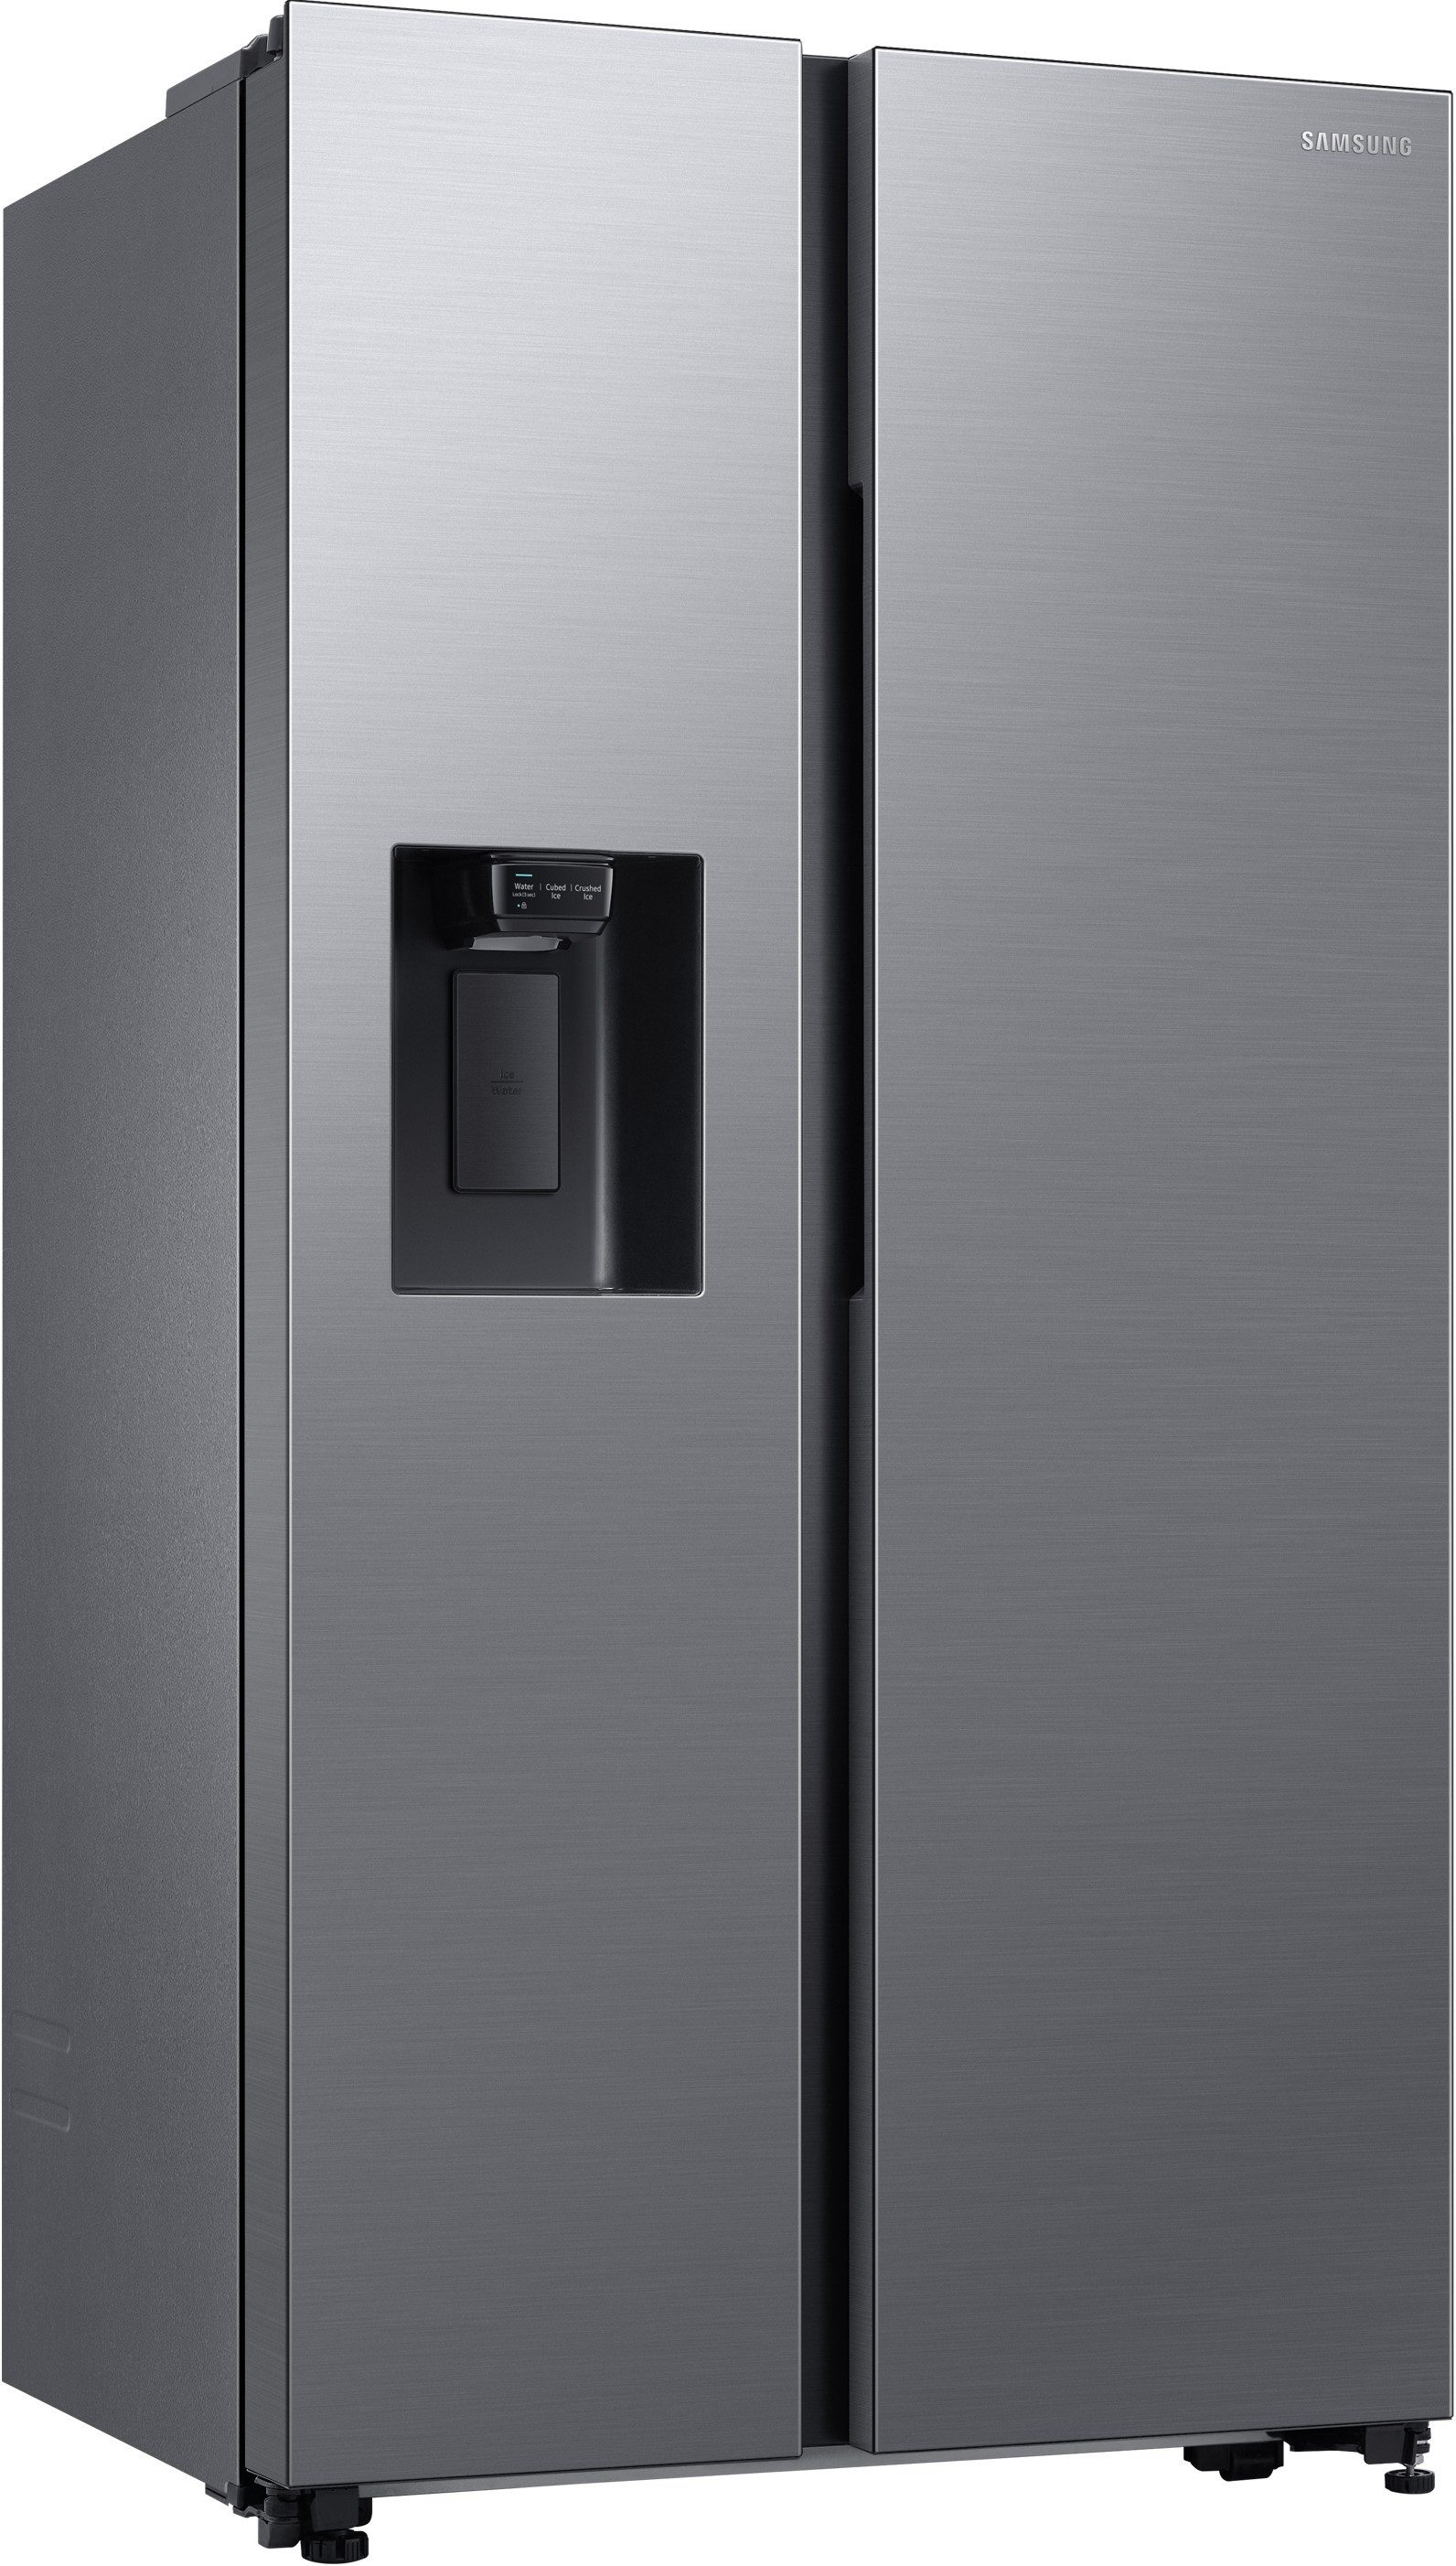 Samsung Side-by-Side RS8000 RS64DG53R3S9, 178,0 cm hoch, 91,2 cm breit, mit Wassertank